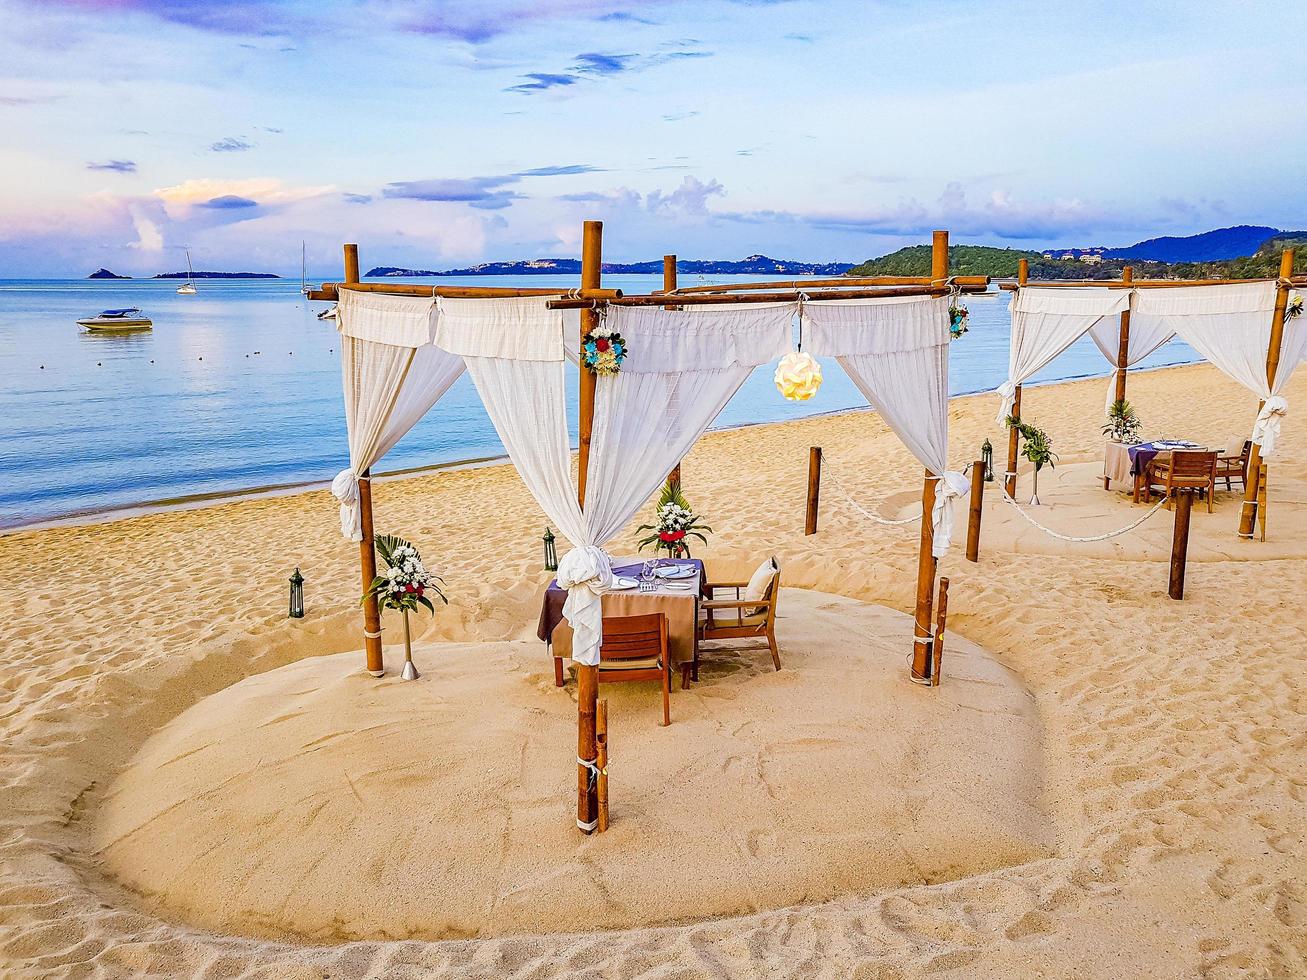 cena privata romantica in luna di miele sulla spiaggia di koh samui, thailandia, 2018 foto